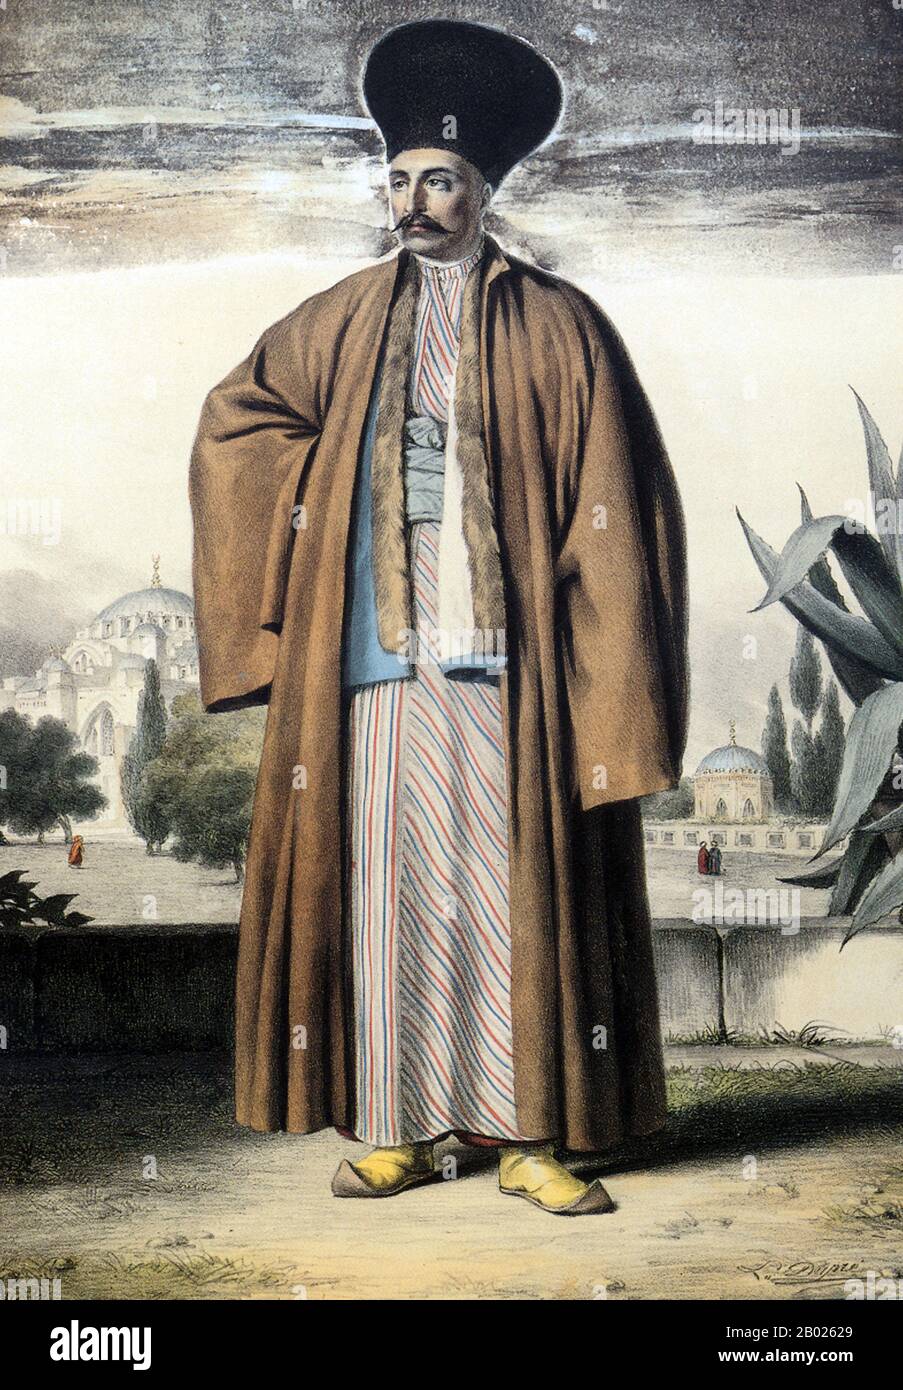 Louis Dupré (Versailles, 9 gennaio 1789 – Parigi, 12 ottobre 1837) è stato un pittore francese, particolarmente noto per i suoi viaggi in Grecia e nell'Impero Ottomano e per i suoi numerosi dipinti con temi orientalisti e Filellenici. Viaggiò spesso e cambiò la sua sede di lavoro, tra cui Parigi, Kassel (1811–1814), Napoli (1814–1816), Roma (1816–1819, 1824–1831), Napoli (1819–1820), Istanbul (ca. 1820), Grecia (ca. 1820), Parigi (1820–1837) e Vienna (1820–1824). La sua visita in Grecia è stata proprio alla vigilia della guerra di indipendenza greca. Foto Stock